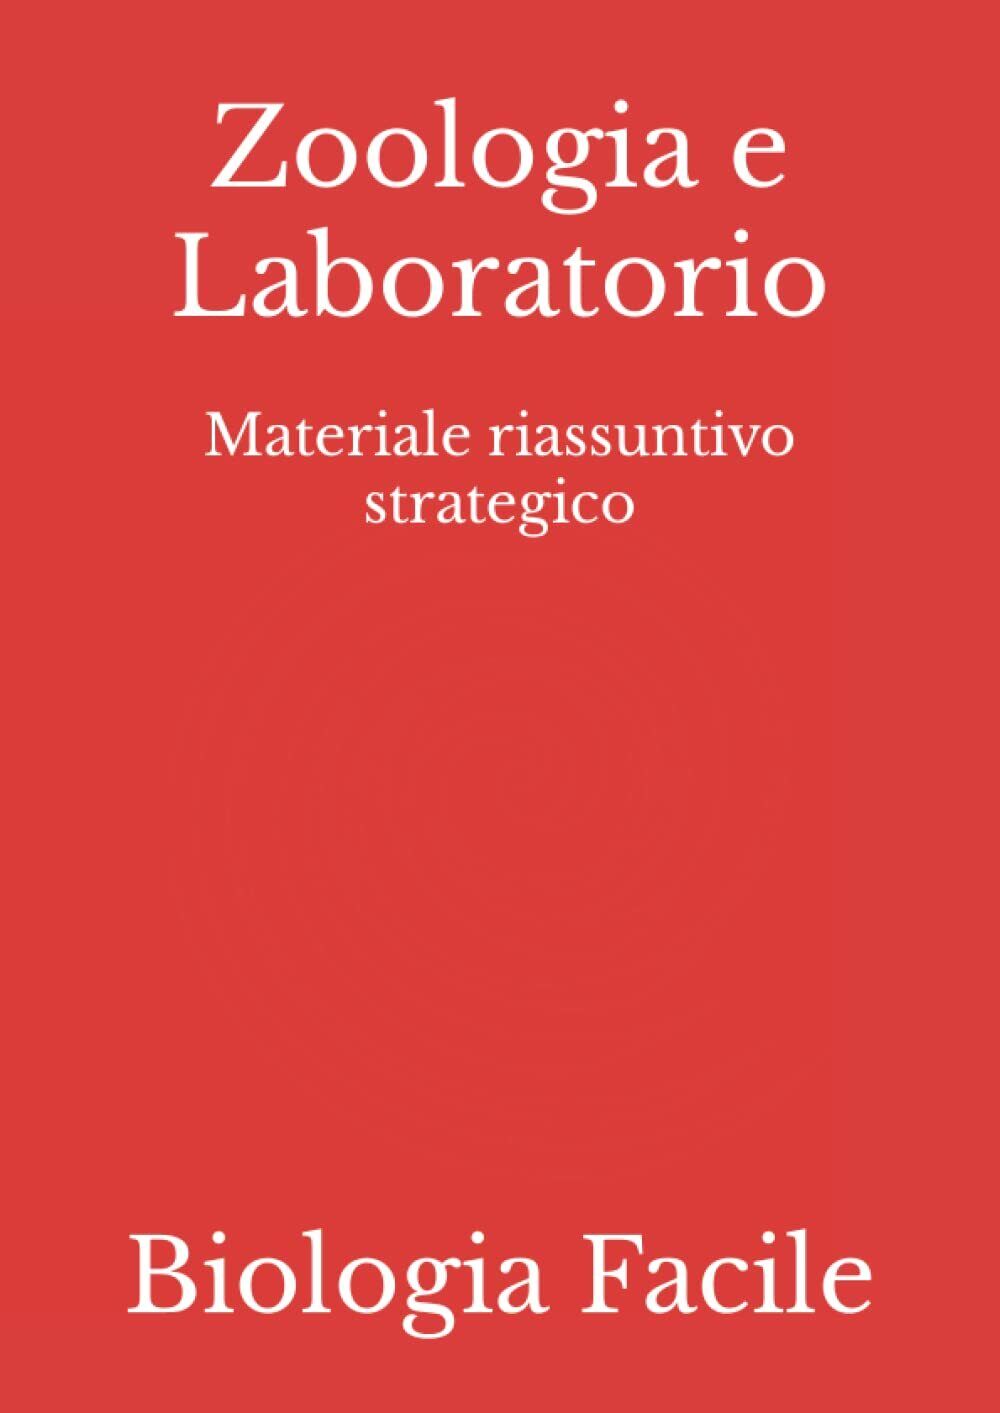 Zoologia e Laboratorio: Materiale riassuntivo strategico di Biologia Facile,  20